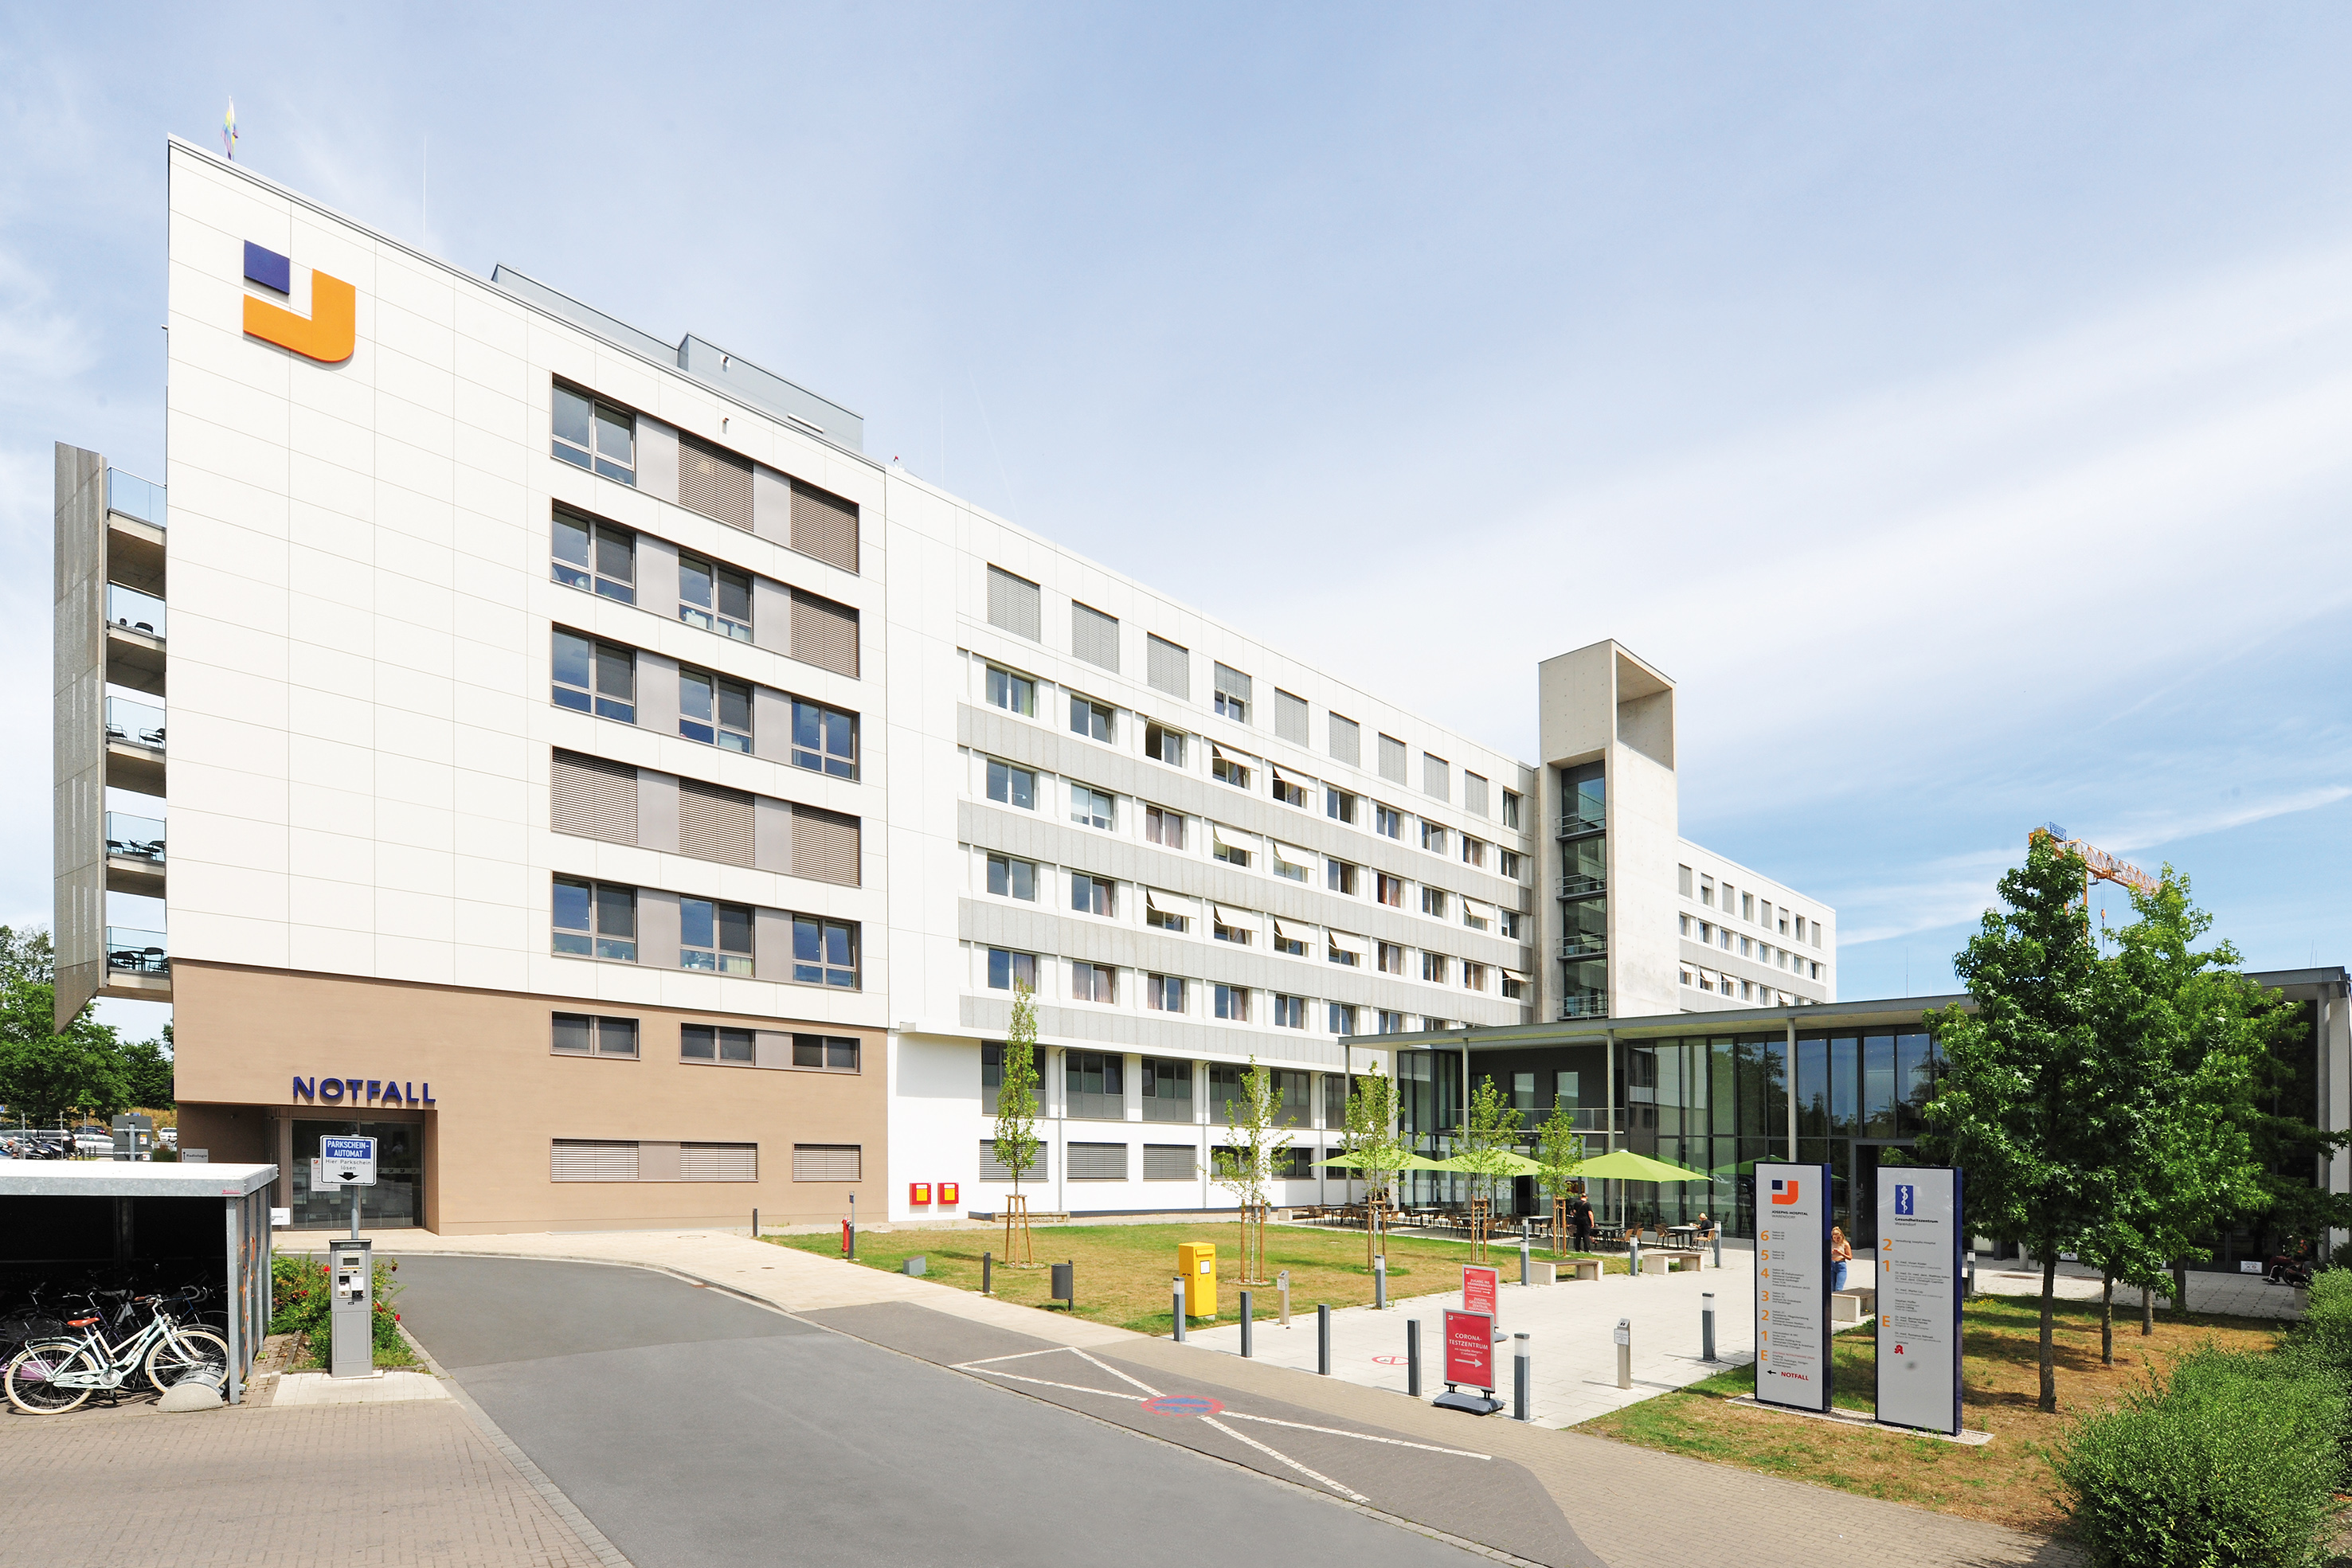 Der siebengeschossige Neubau, als Erweiterung des Josephs-Hospitals in Warendorf, beherbergt neben der Notaufnahme u. a. eine Intensivstation und moderne Patientenzimmer.